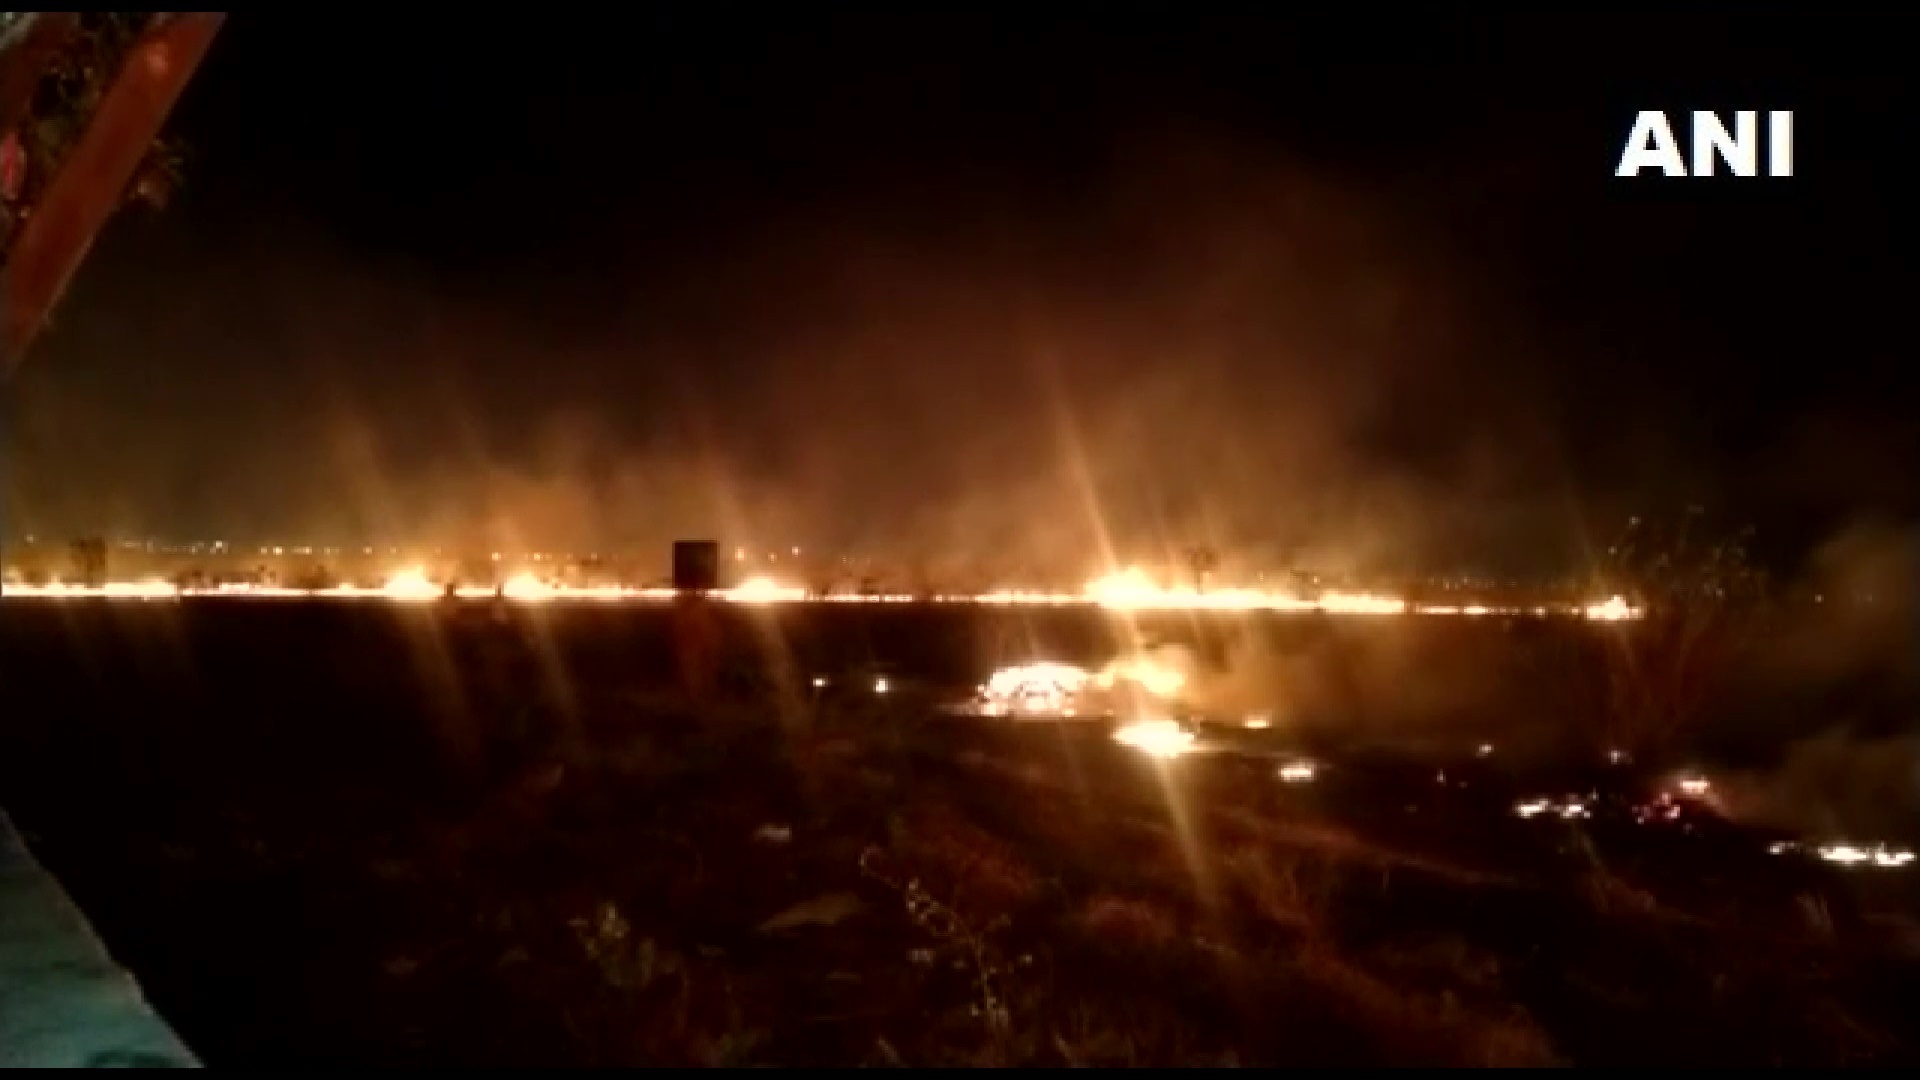 अग्निशामन दलाच्या चार गाड्या येथील आग विझवण्याचा प्रयत्न करत आहेत. (फोटो सौजन्य: एएनआय)